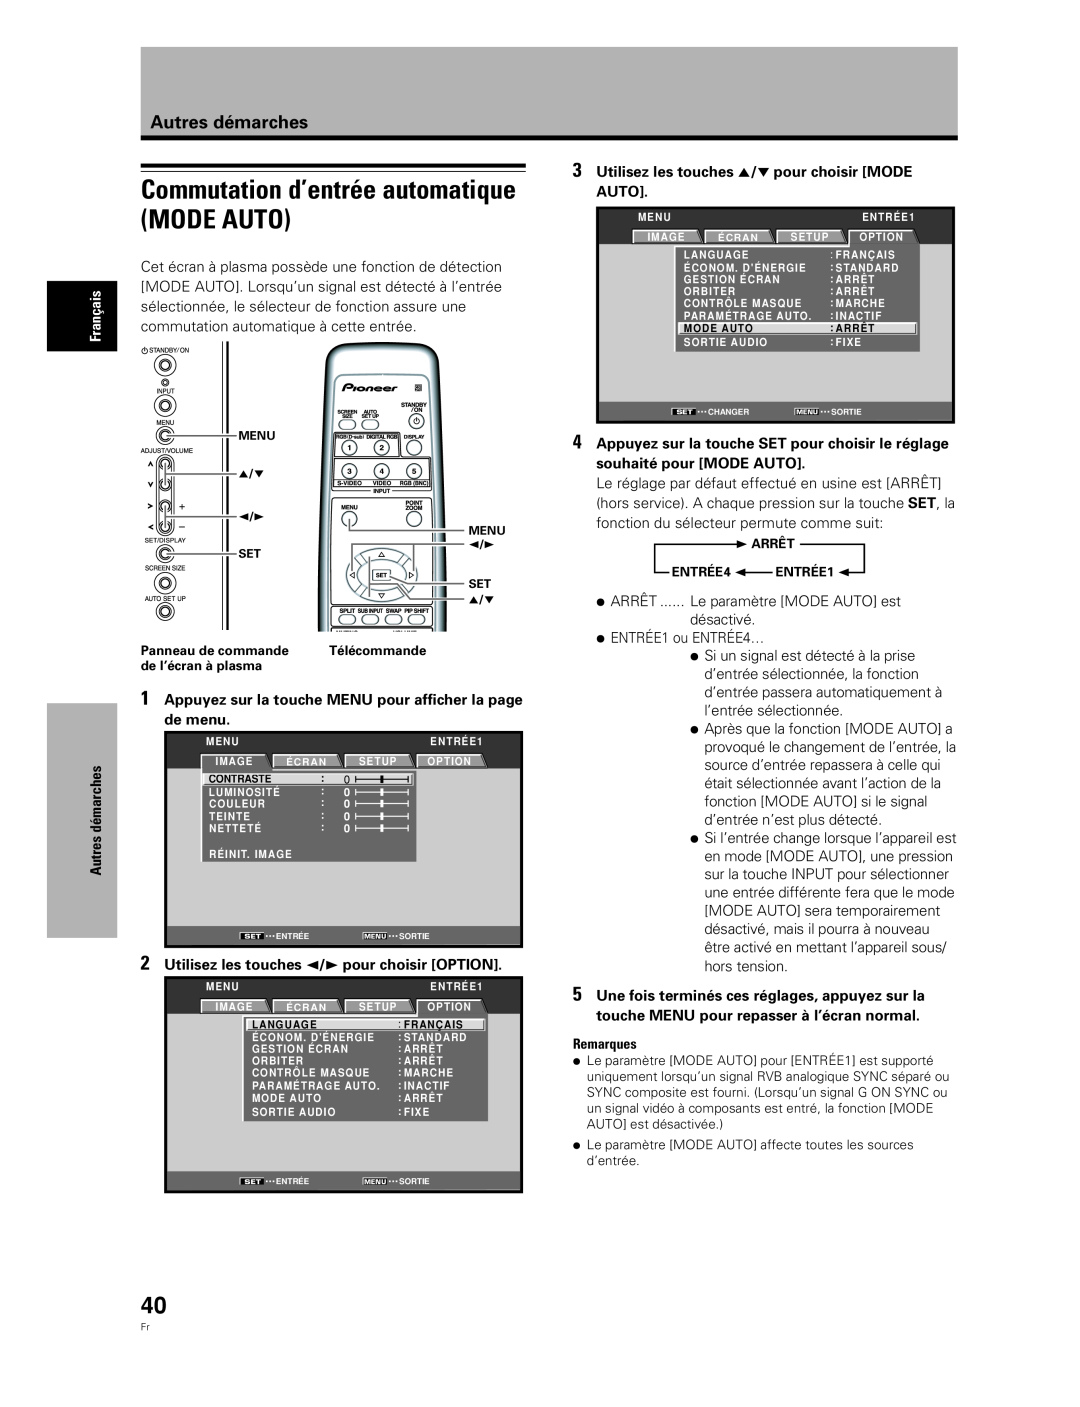 Pioneer PDA-5004, PDA-5003 Commutation d’entrée automatique MODE AUTO, Utilisez les touches 5/∞ pour choisir MODE AUTO 